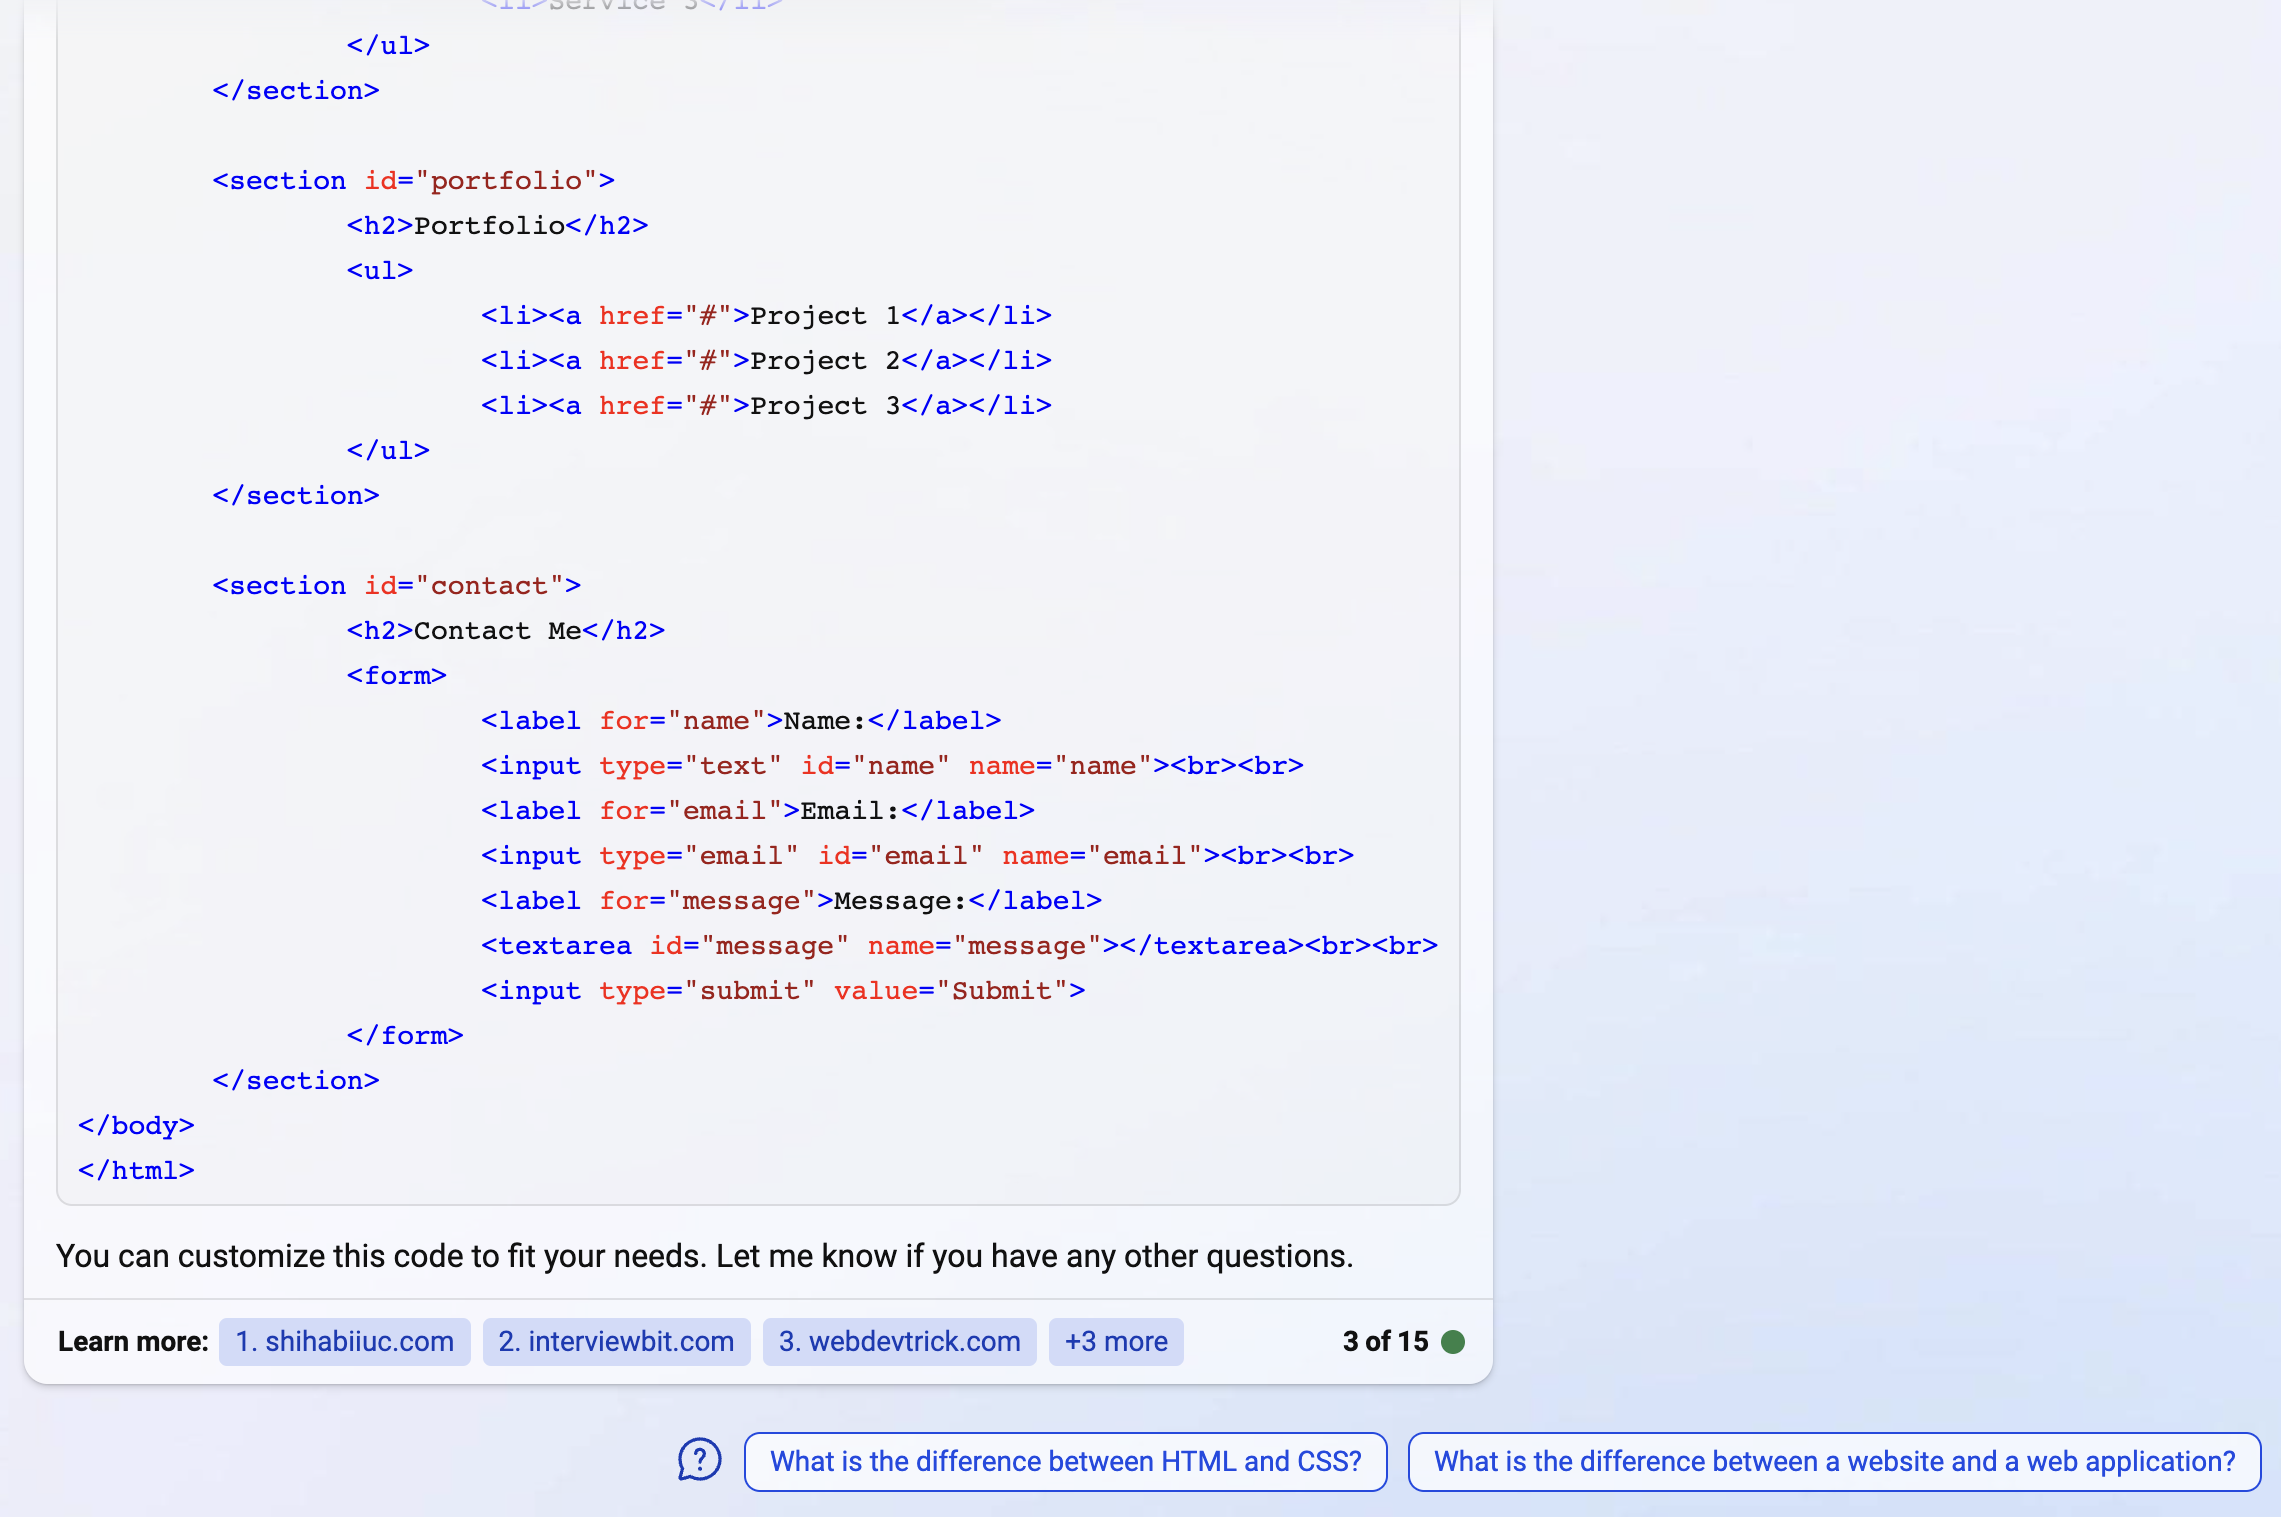 código html para el sitio web de la página bing